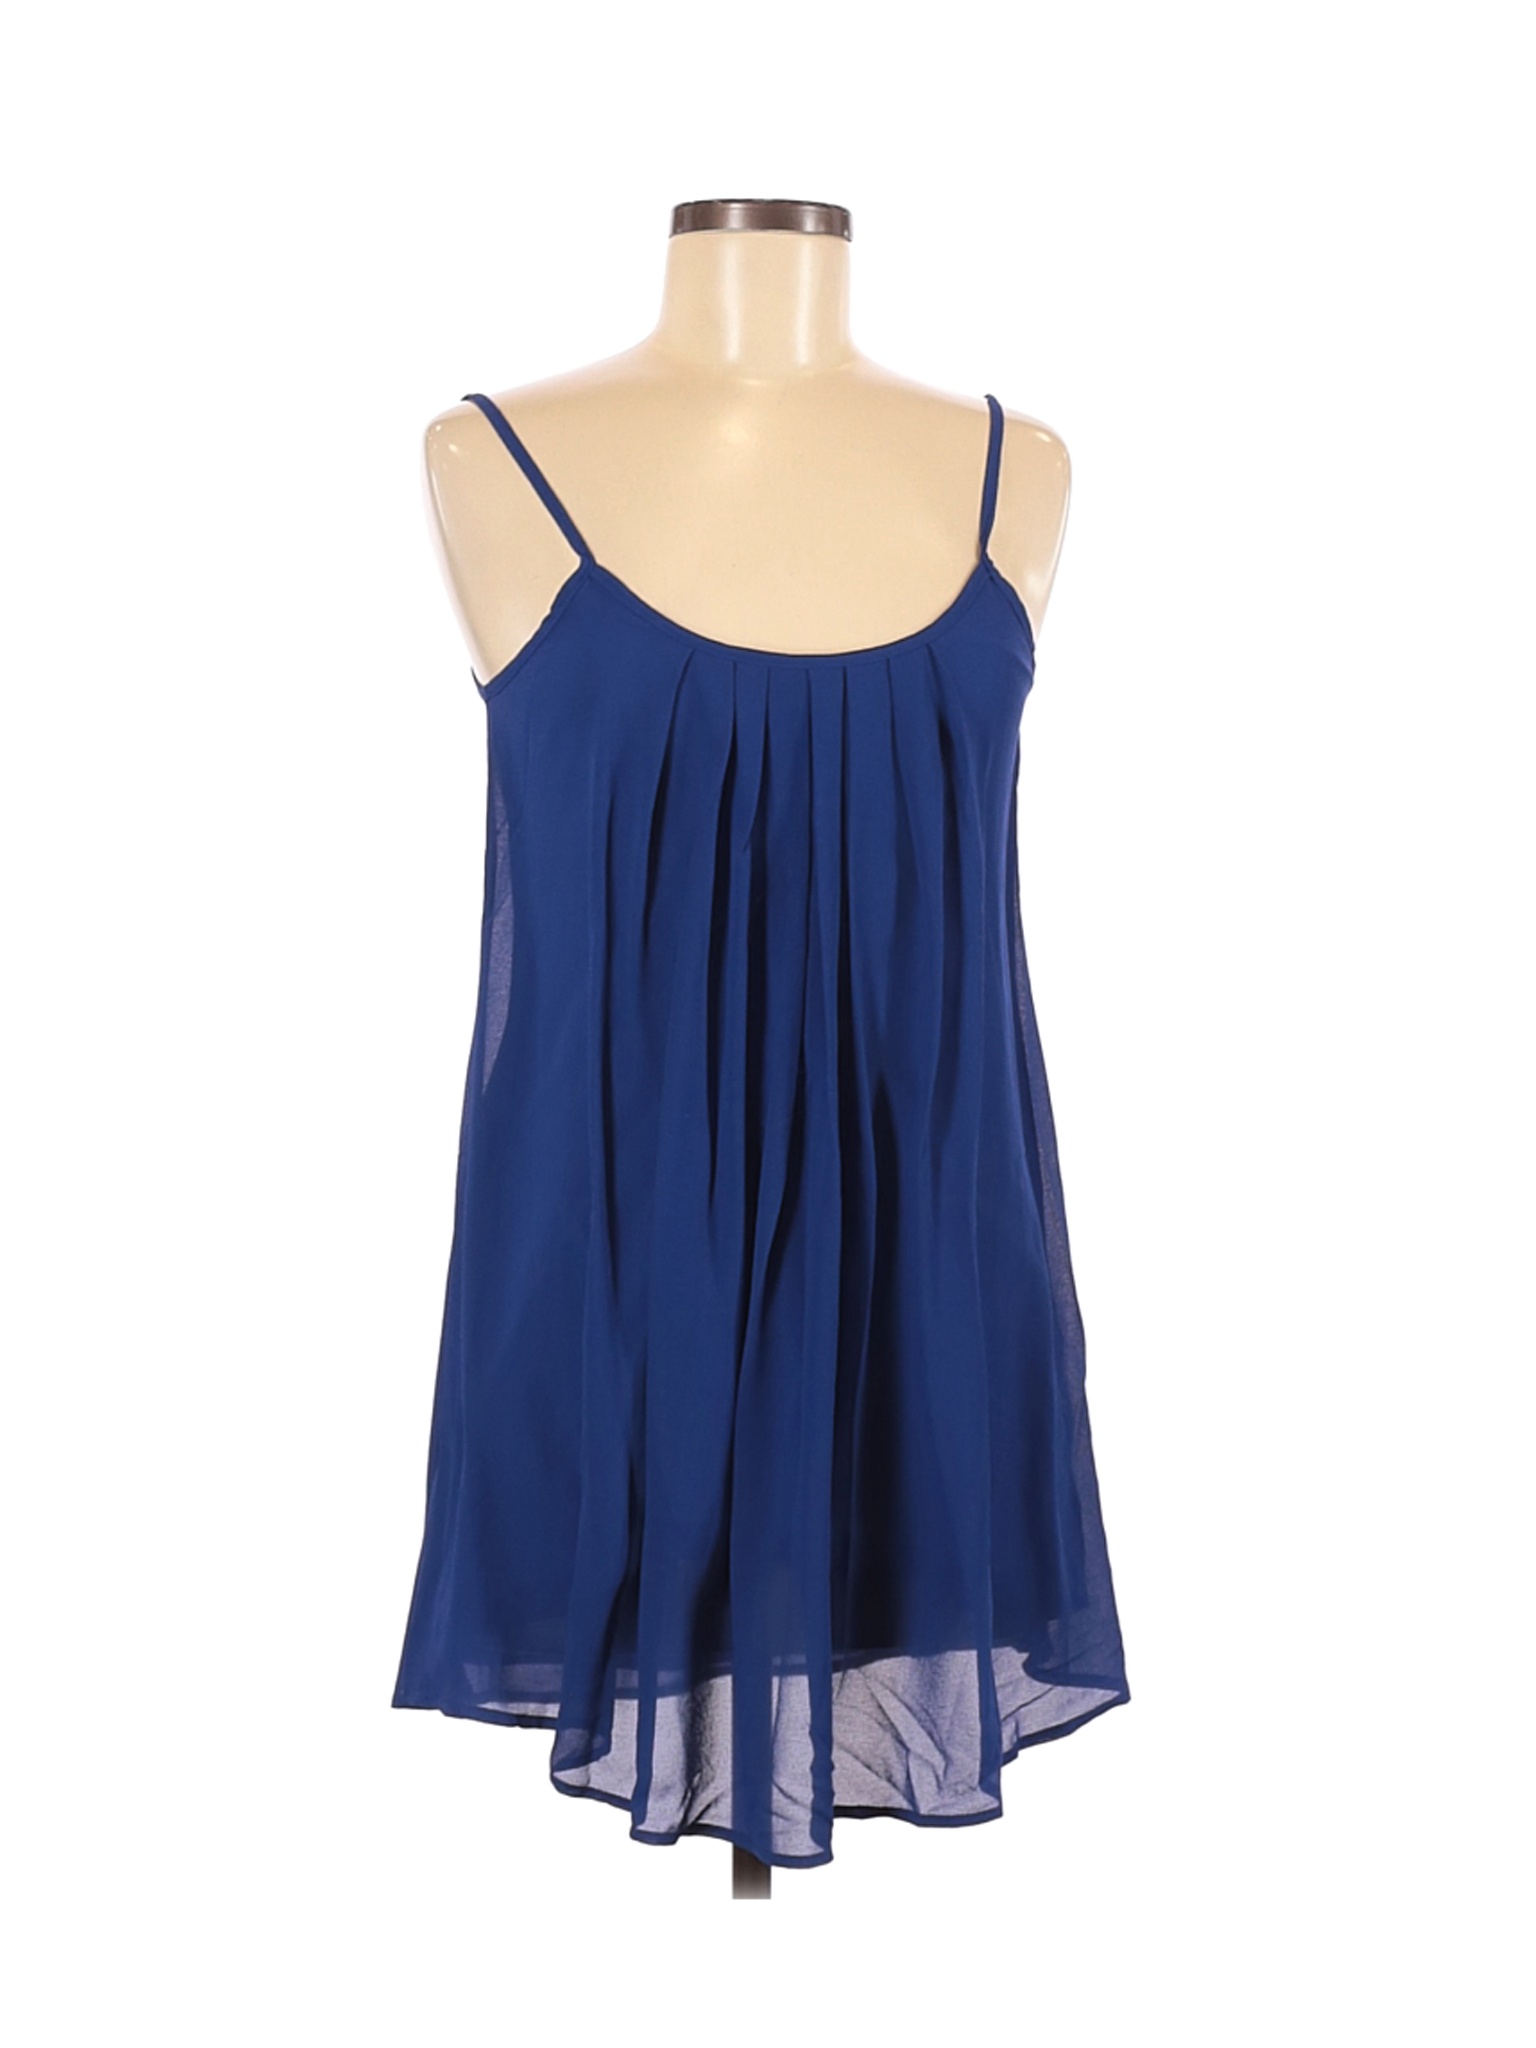 Lotusmile Women Blue Sleeveless Blouse M | eBay